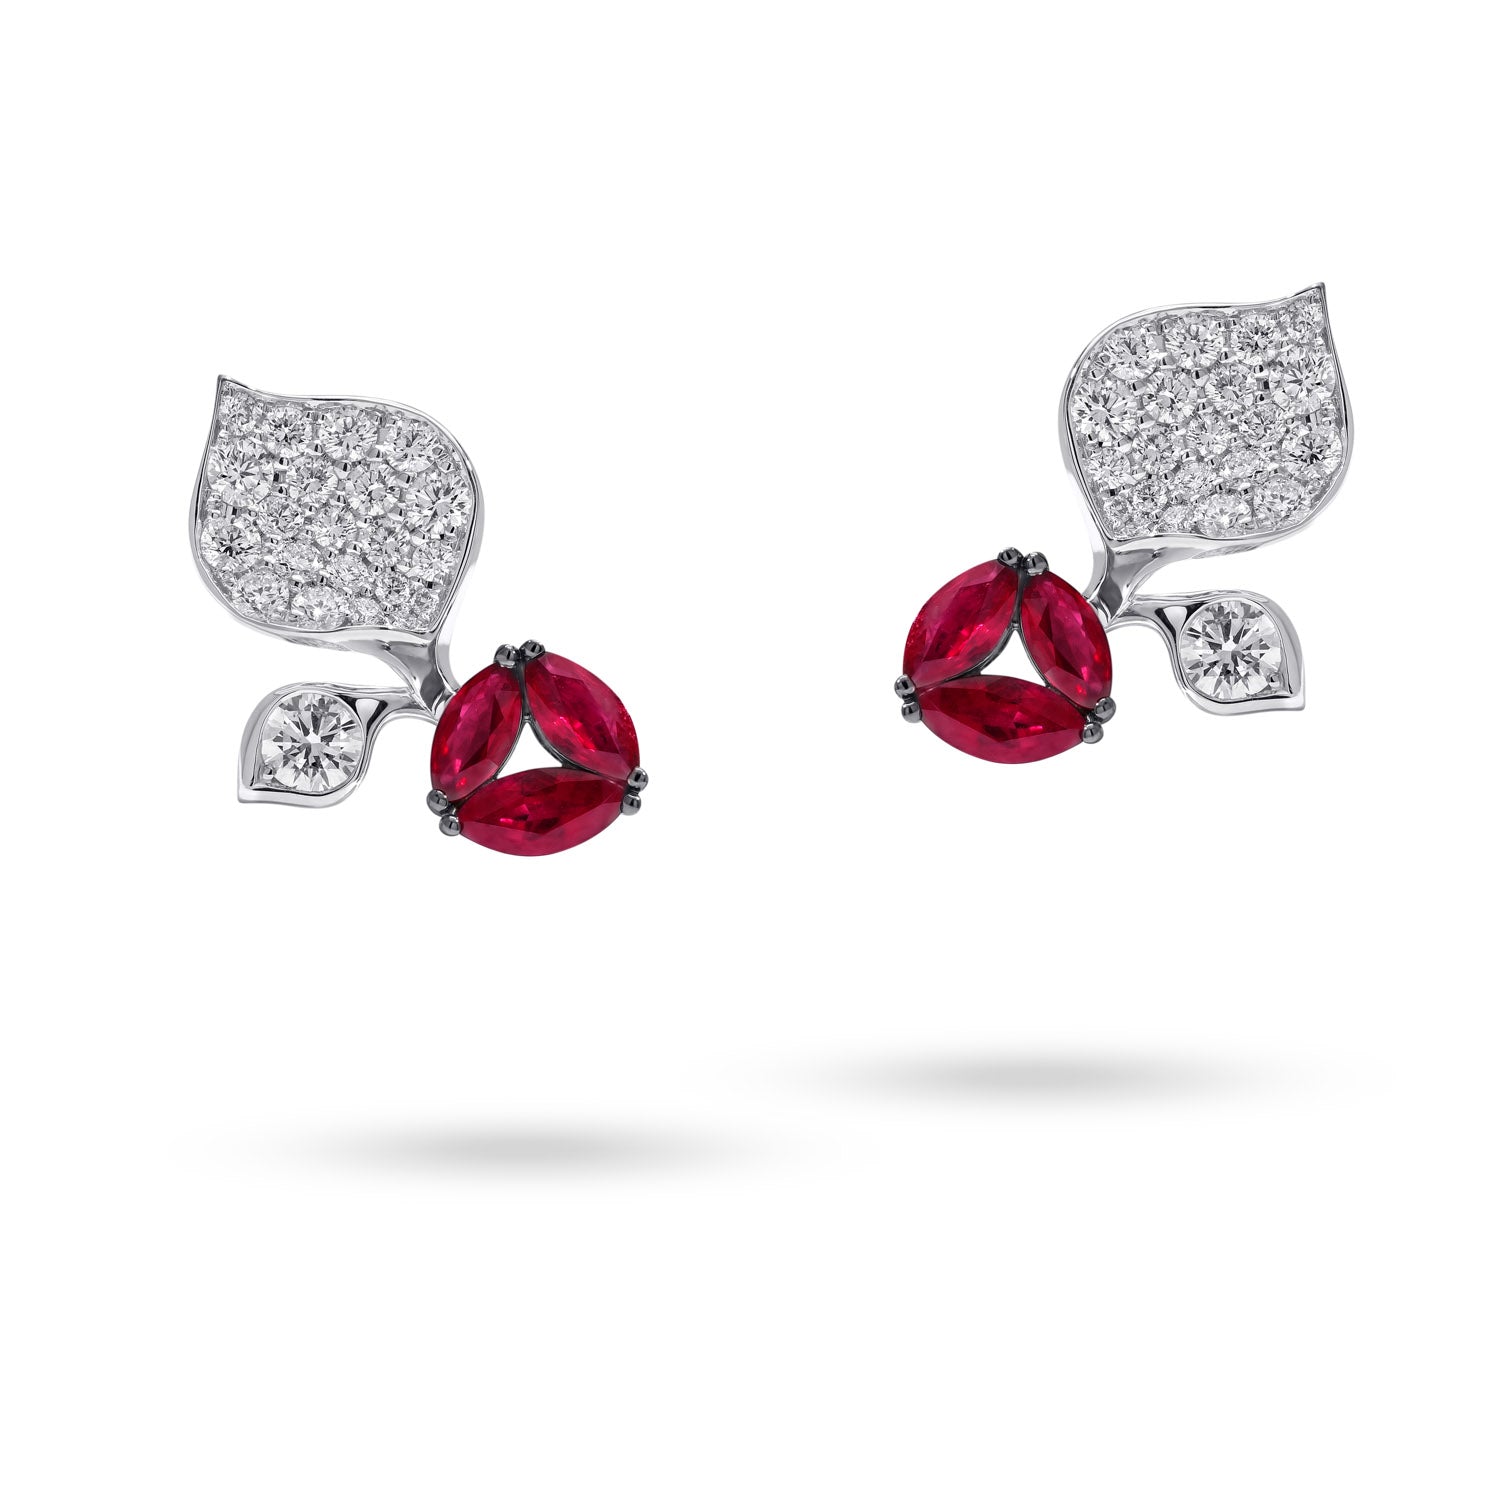 À FLEUR DE PARIS small Ruby Leaf Earrings